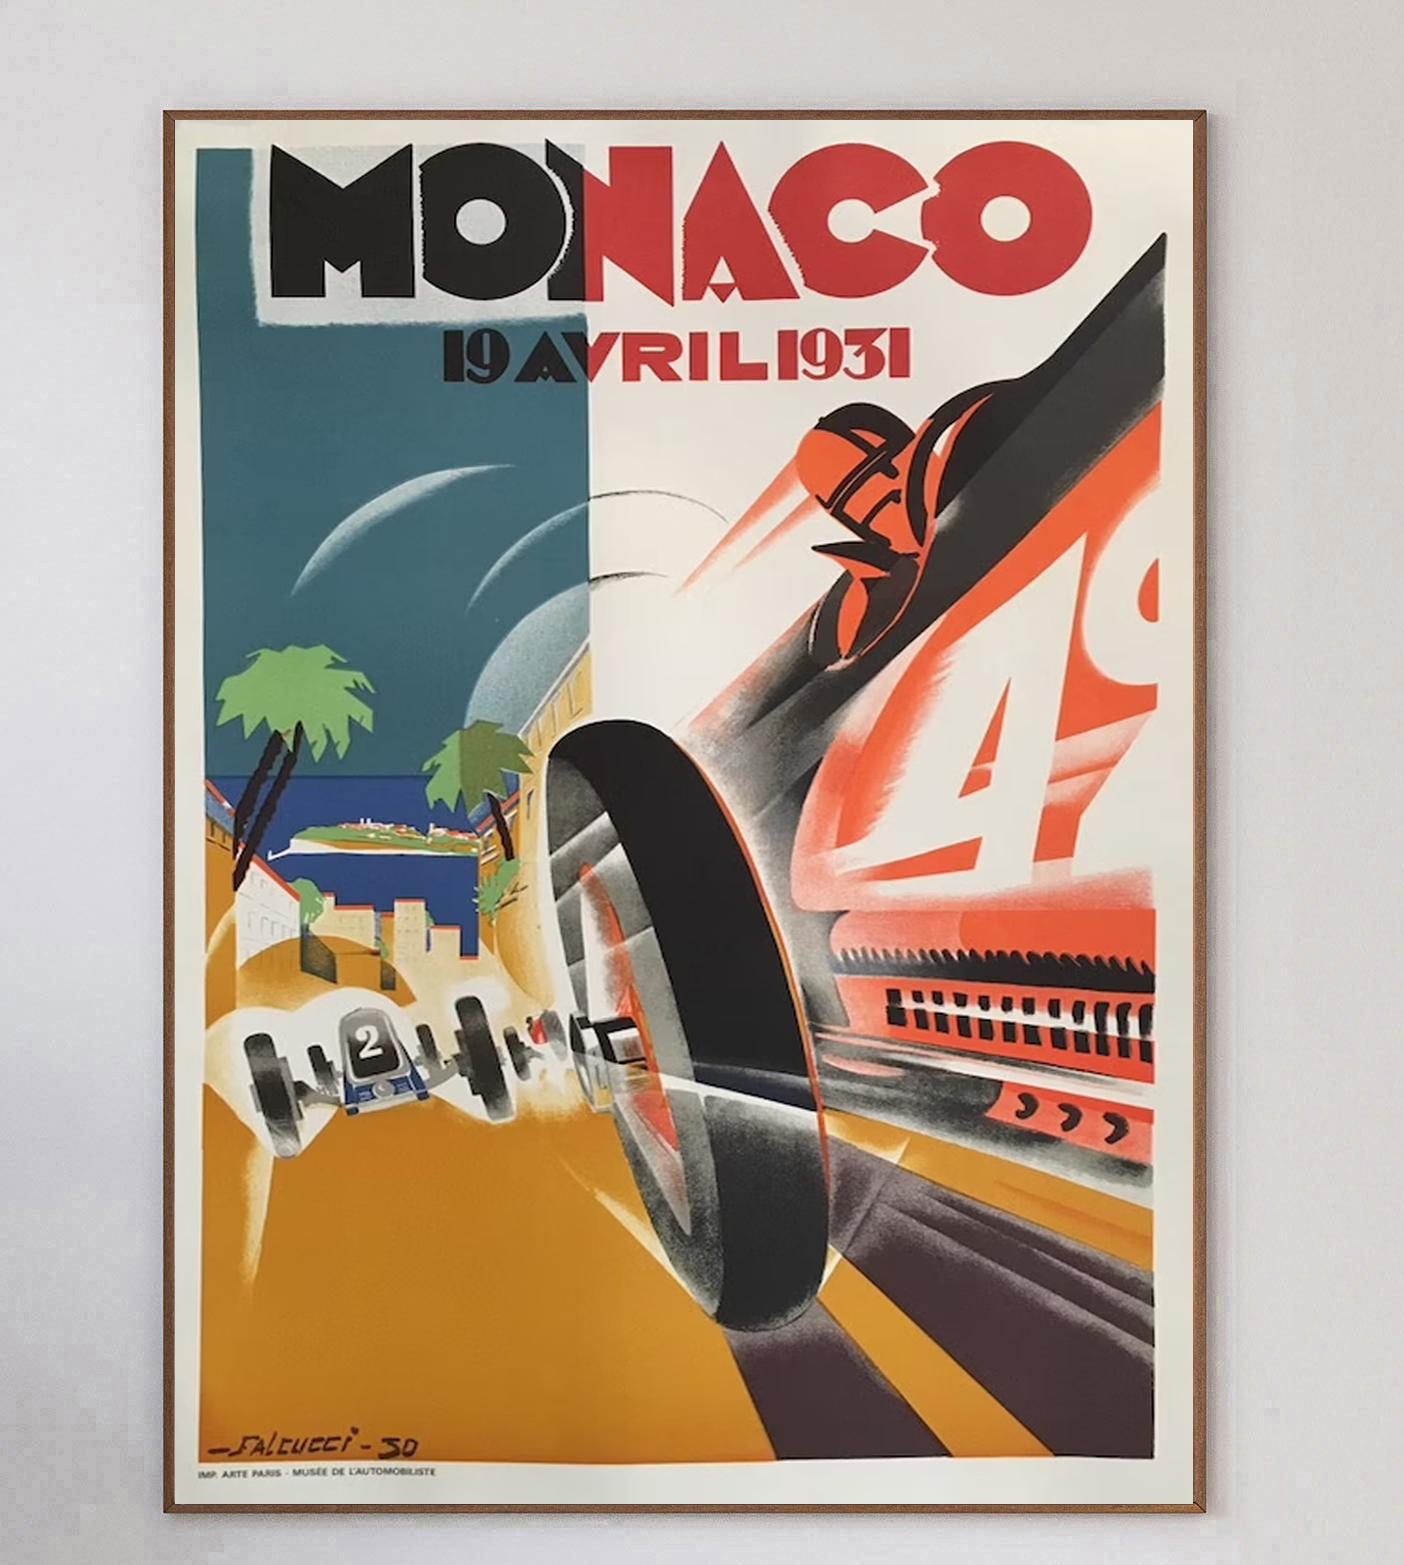 Dieses Plakat für den Großen Preis von Monaco 1931 wurde von dem Künstler Robert Falcucci entworfen und brillant illustriert. Das Bild zeigt ein rasendes rotes Auto, das einem weißen Auto ausweicht, in leuchtenden Farben im wunderschönen